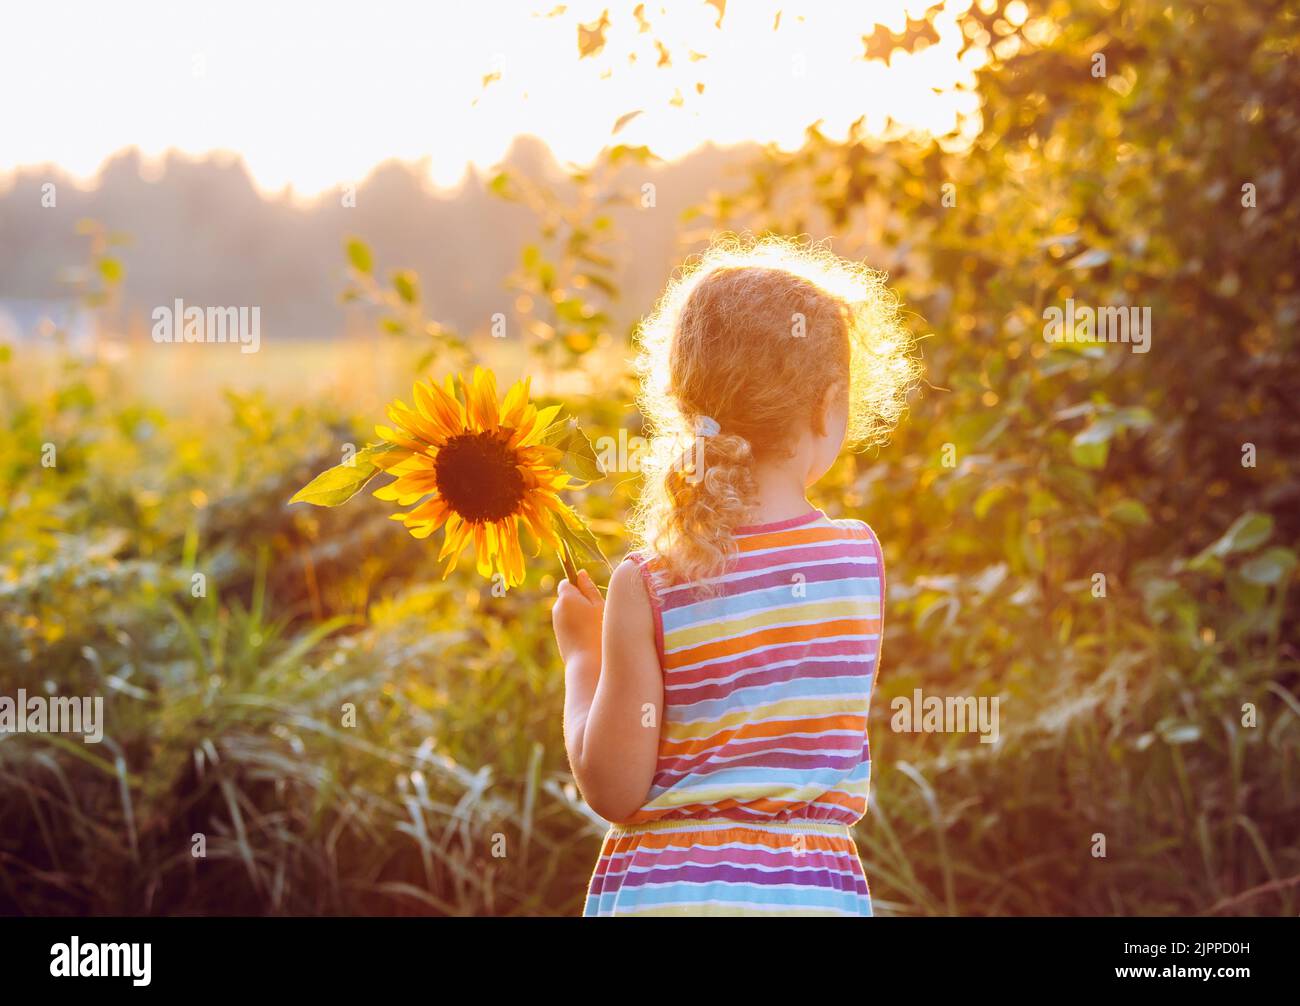 Vue arrière d'une jeune fille de 6 ans méconnaissable tenant un tournesol tandis que le soleil se couche à l'heure d'or le jour d'été. Concept d'enfance insouciant. Banque D'Images